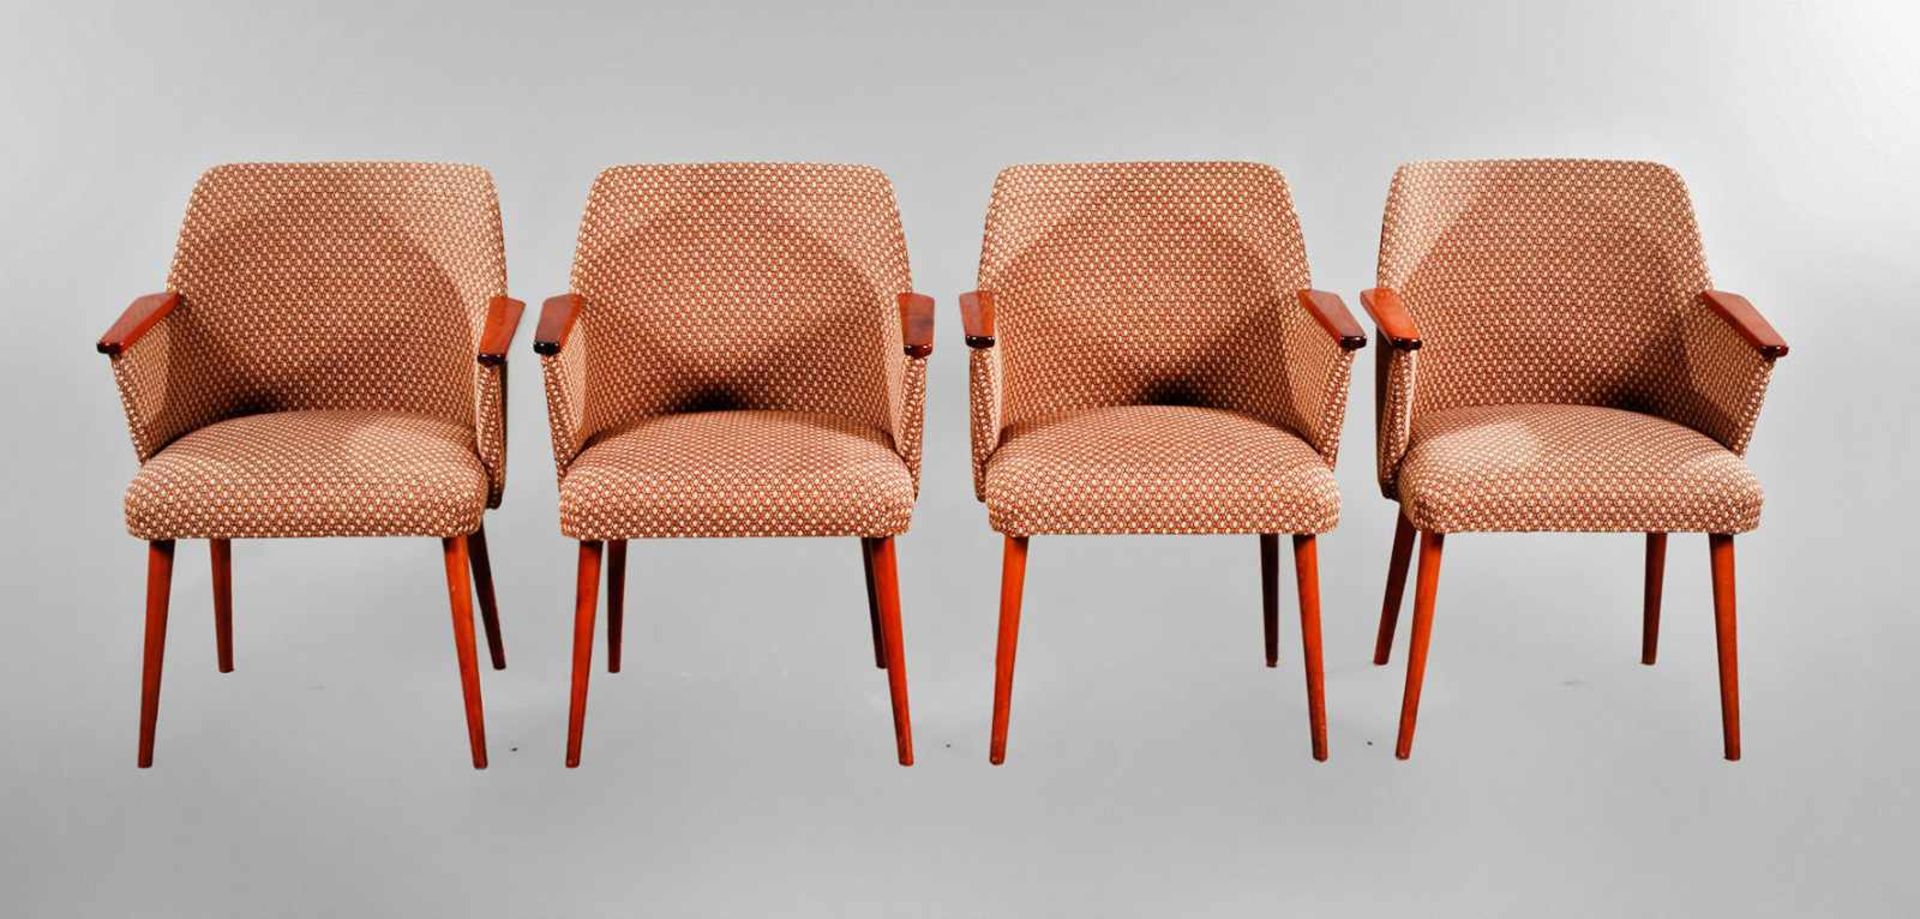 Vier Sessel DDR-Design 1950er Jahre, Lehne und Beine aus Buche, rotbraun gebeizt, originaler